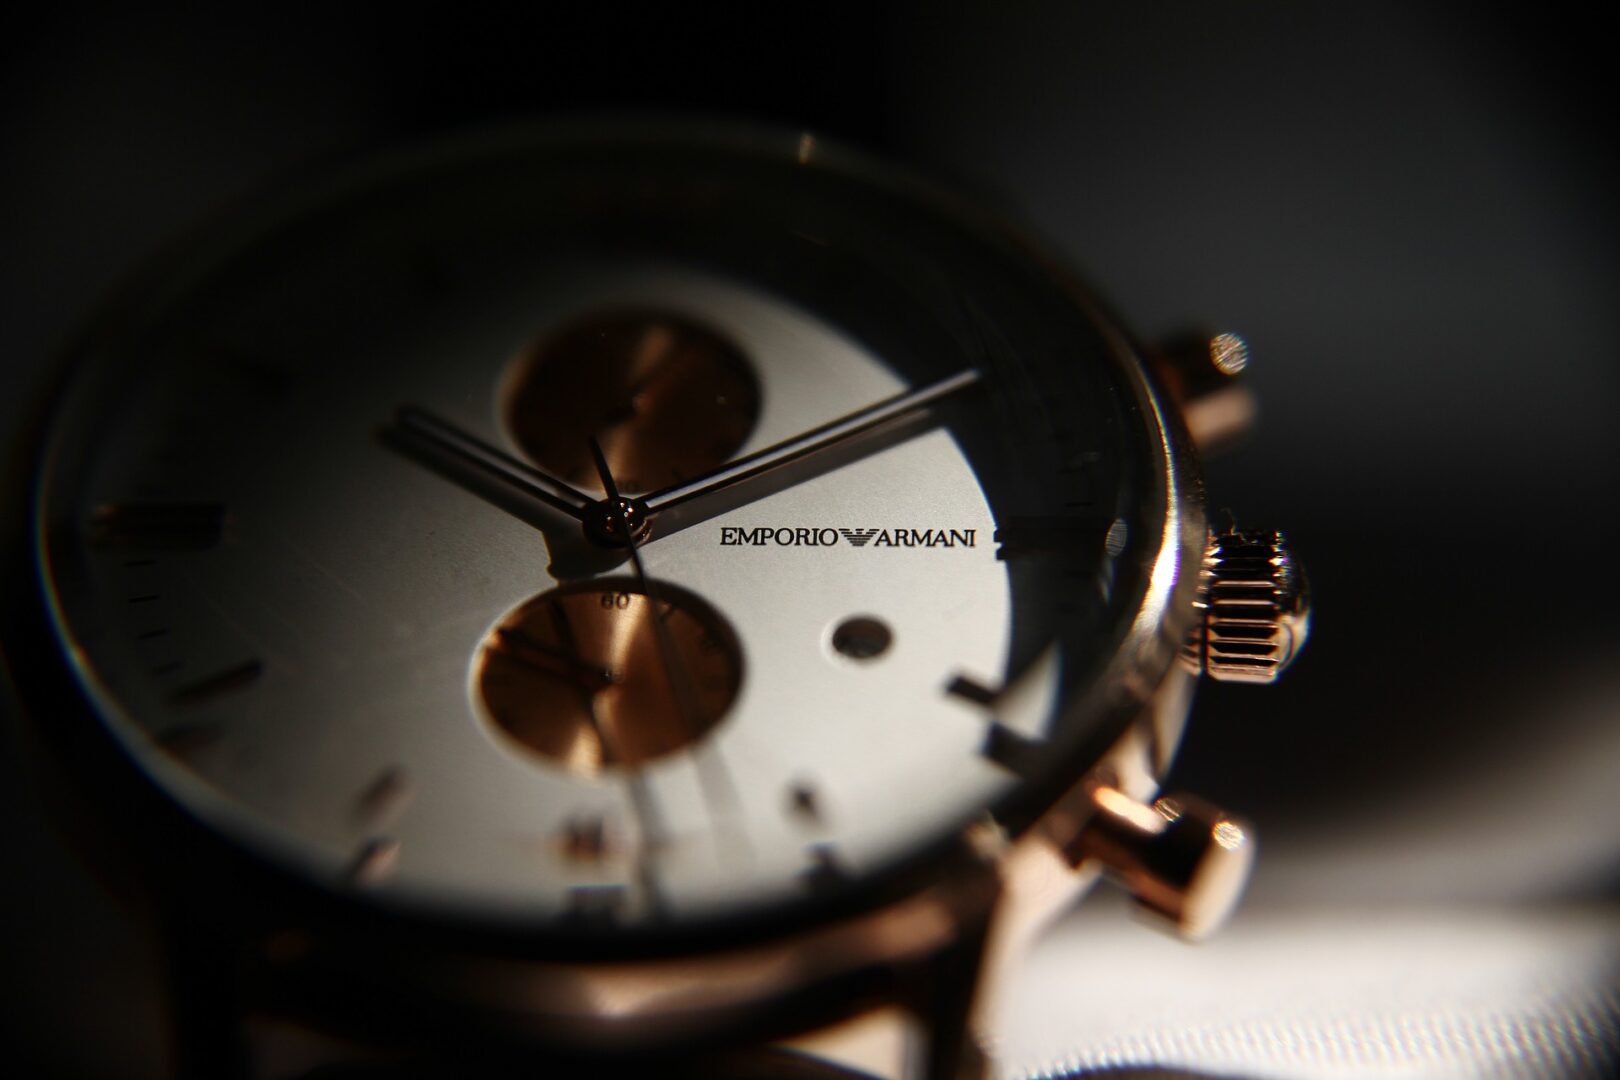 Emporio Armani zegarki prosto z włoskiego domu mody – TOP6